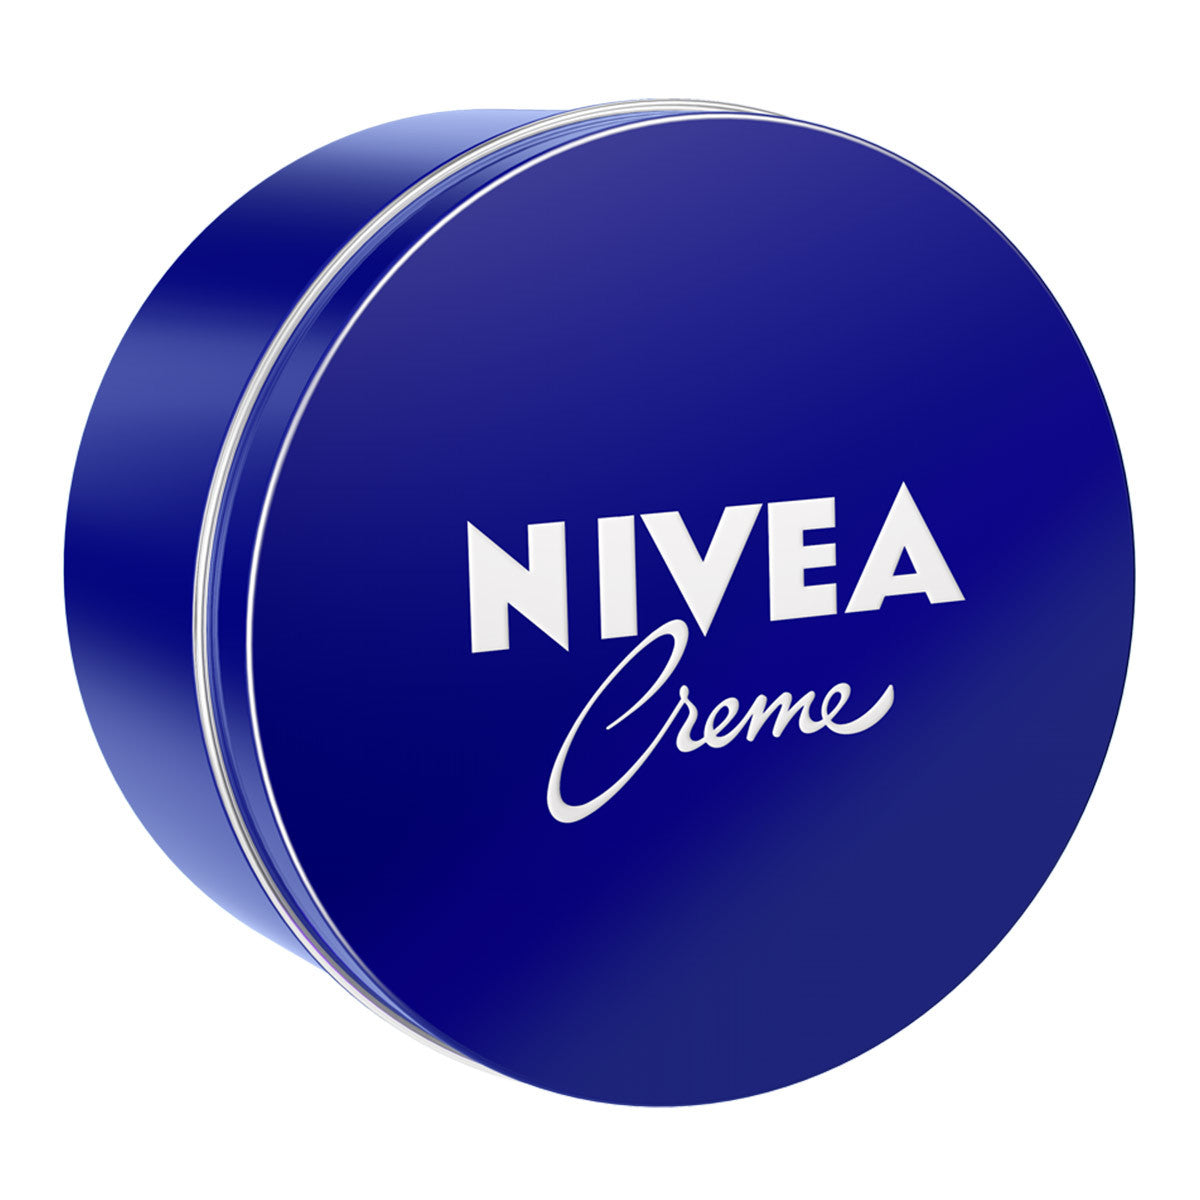 Primary image of Nivea Creme